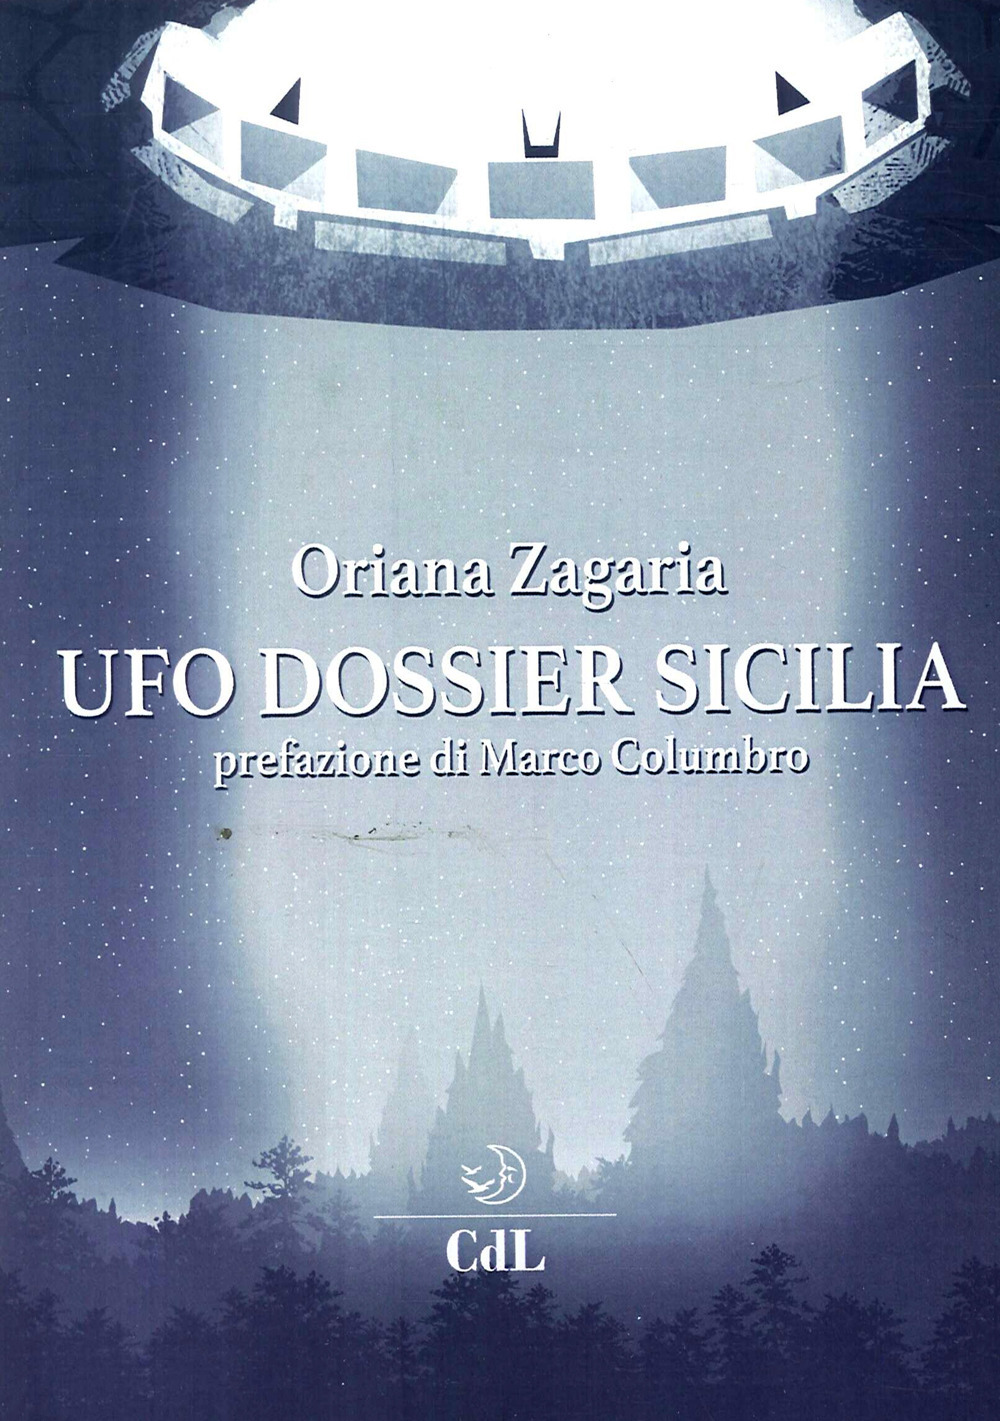 UFO dossier Sicilia